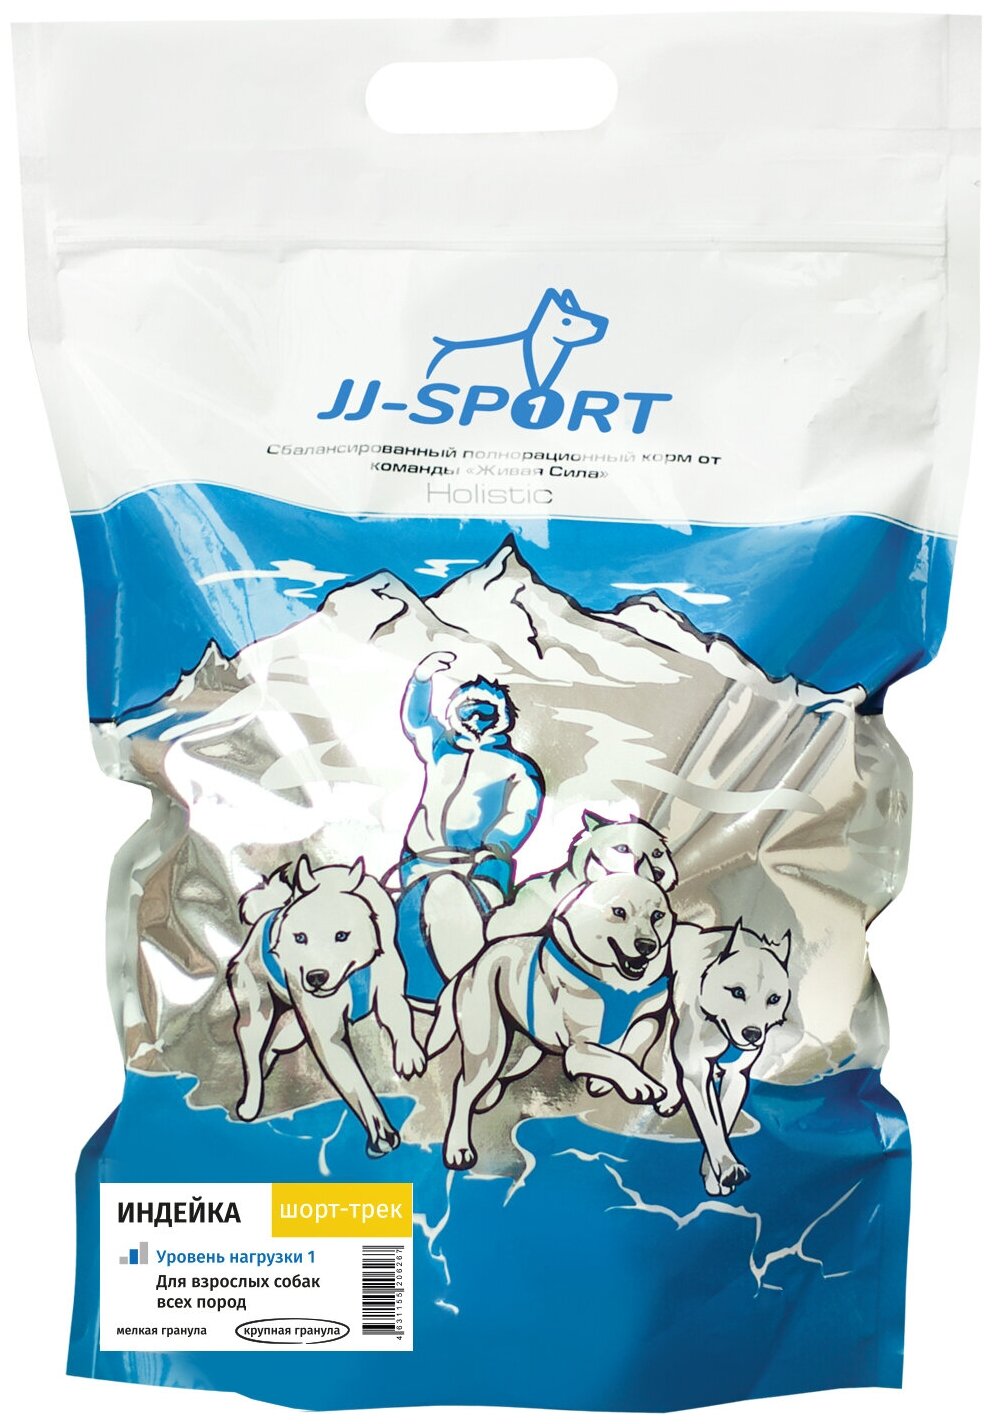 Корм JJ-Sport Шорт-трек (крупная гранула) для собак с умеренной активностью, с индейкой, 2.5 кг